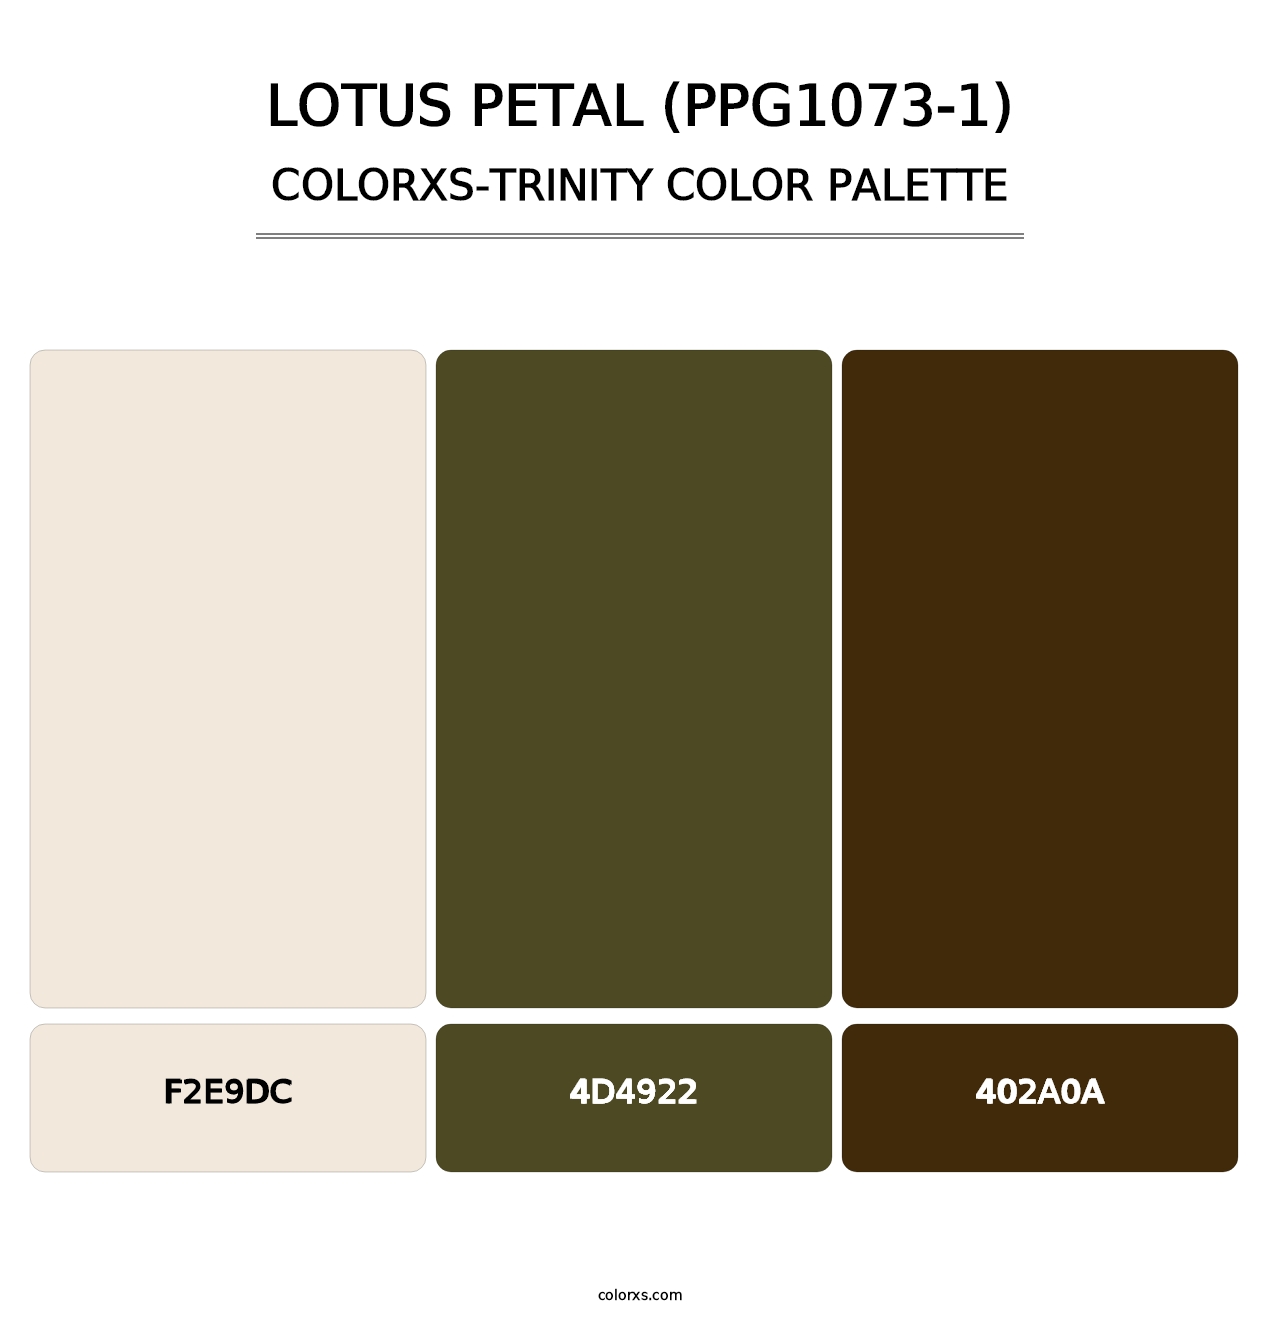 Lotus Petal (PPG1073-1) - Colorxs Trinity Palette